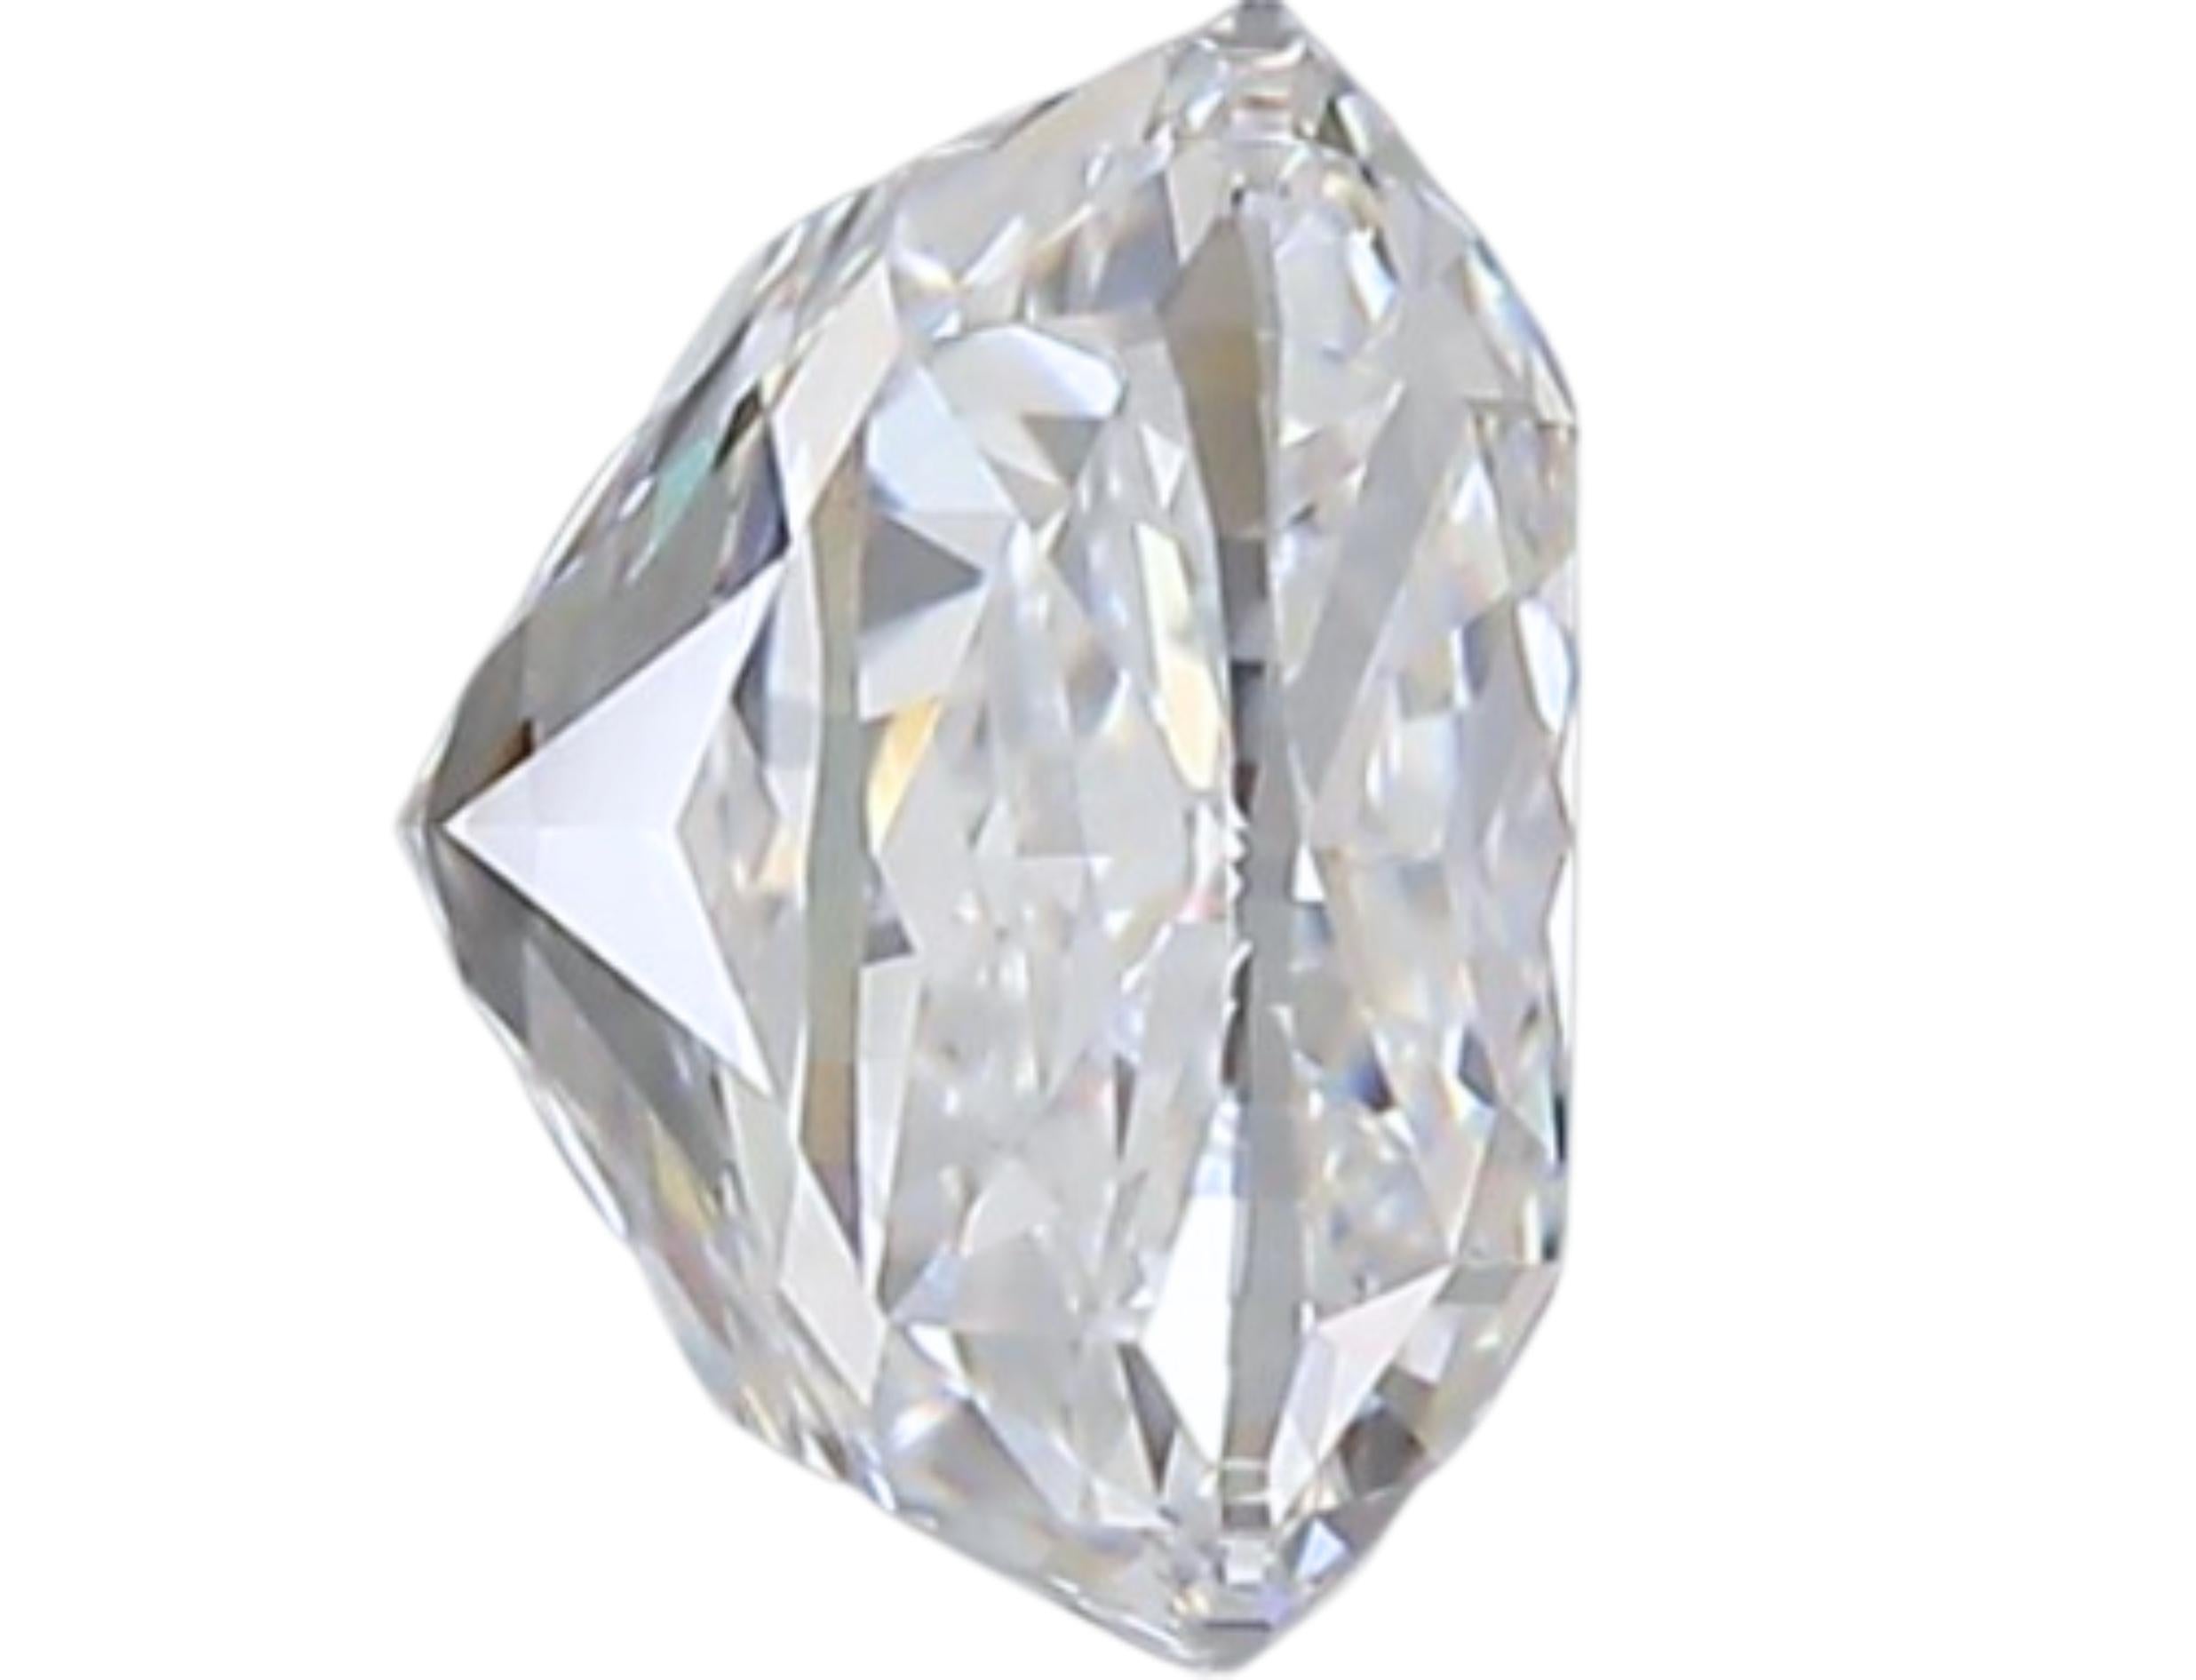 Diamant coussin de taille naturelle de 1,50 carat D VVS2. Ce diamant est accompagné d'un certificat GIA et d'un numéro d'inscription au laser.

Découvrez l'allure intemporelle de notre diamant naturel taille coussin de 1,50 carat, couleur D, clarté